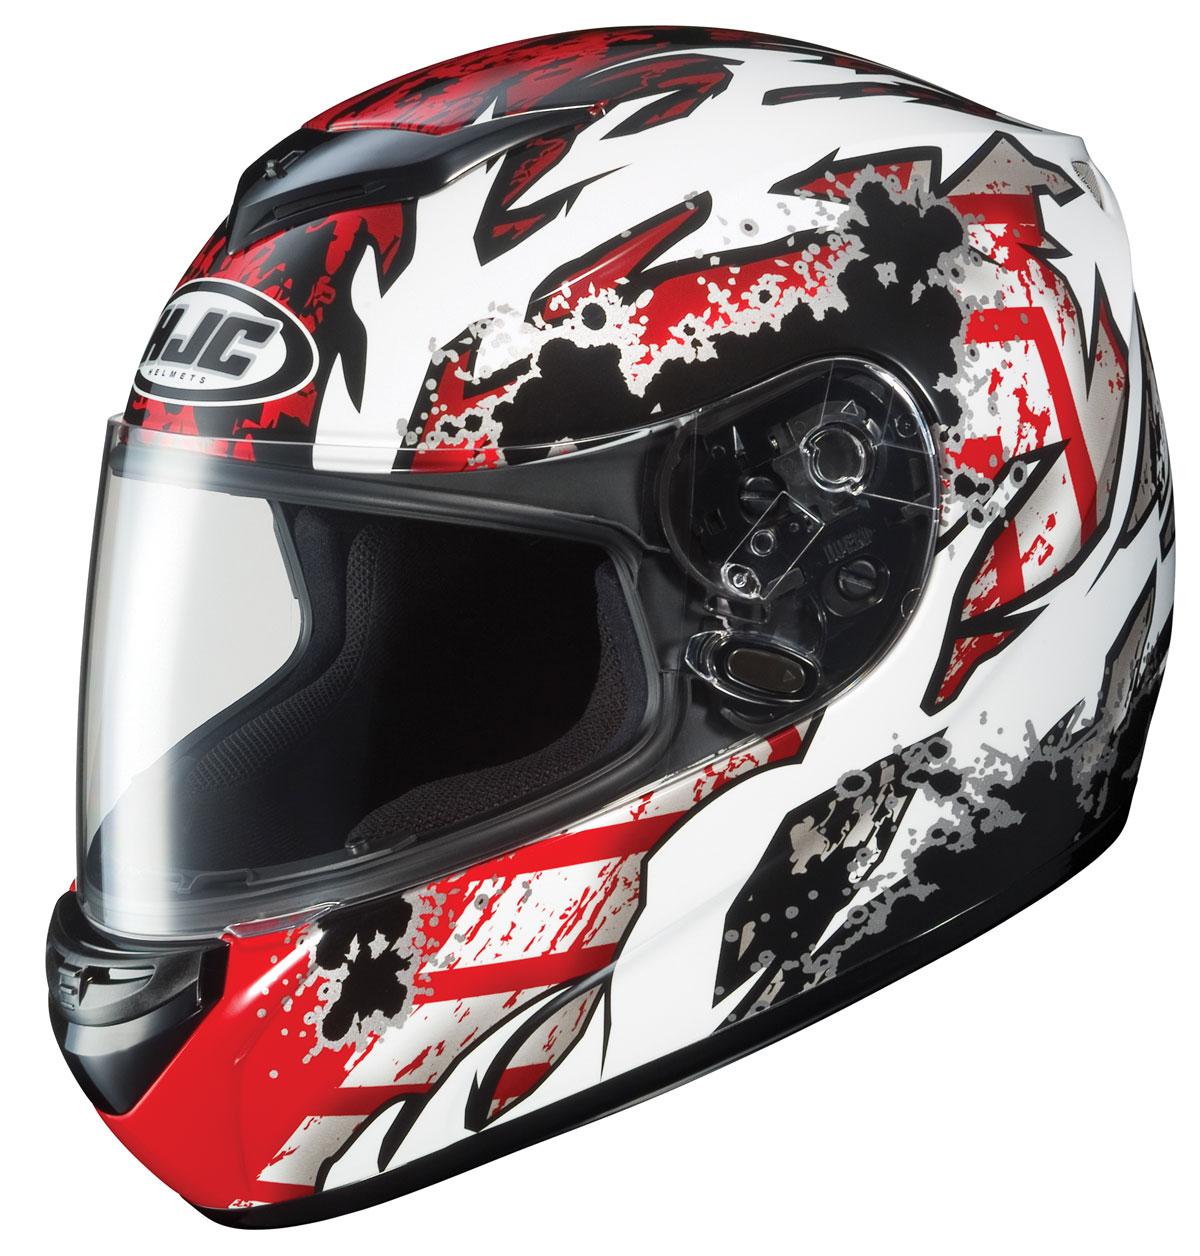 Hjc cs-r2 skarr red full-face motorcycle helmet size x-large